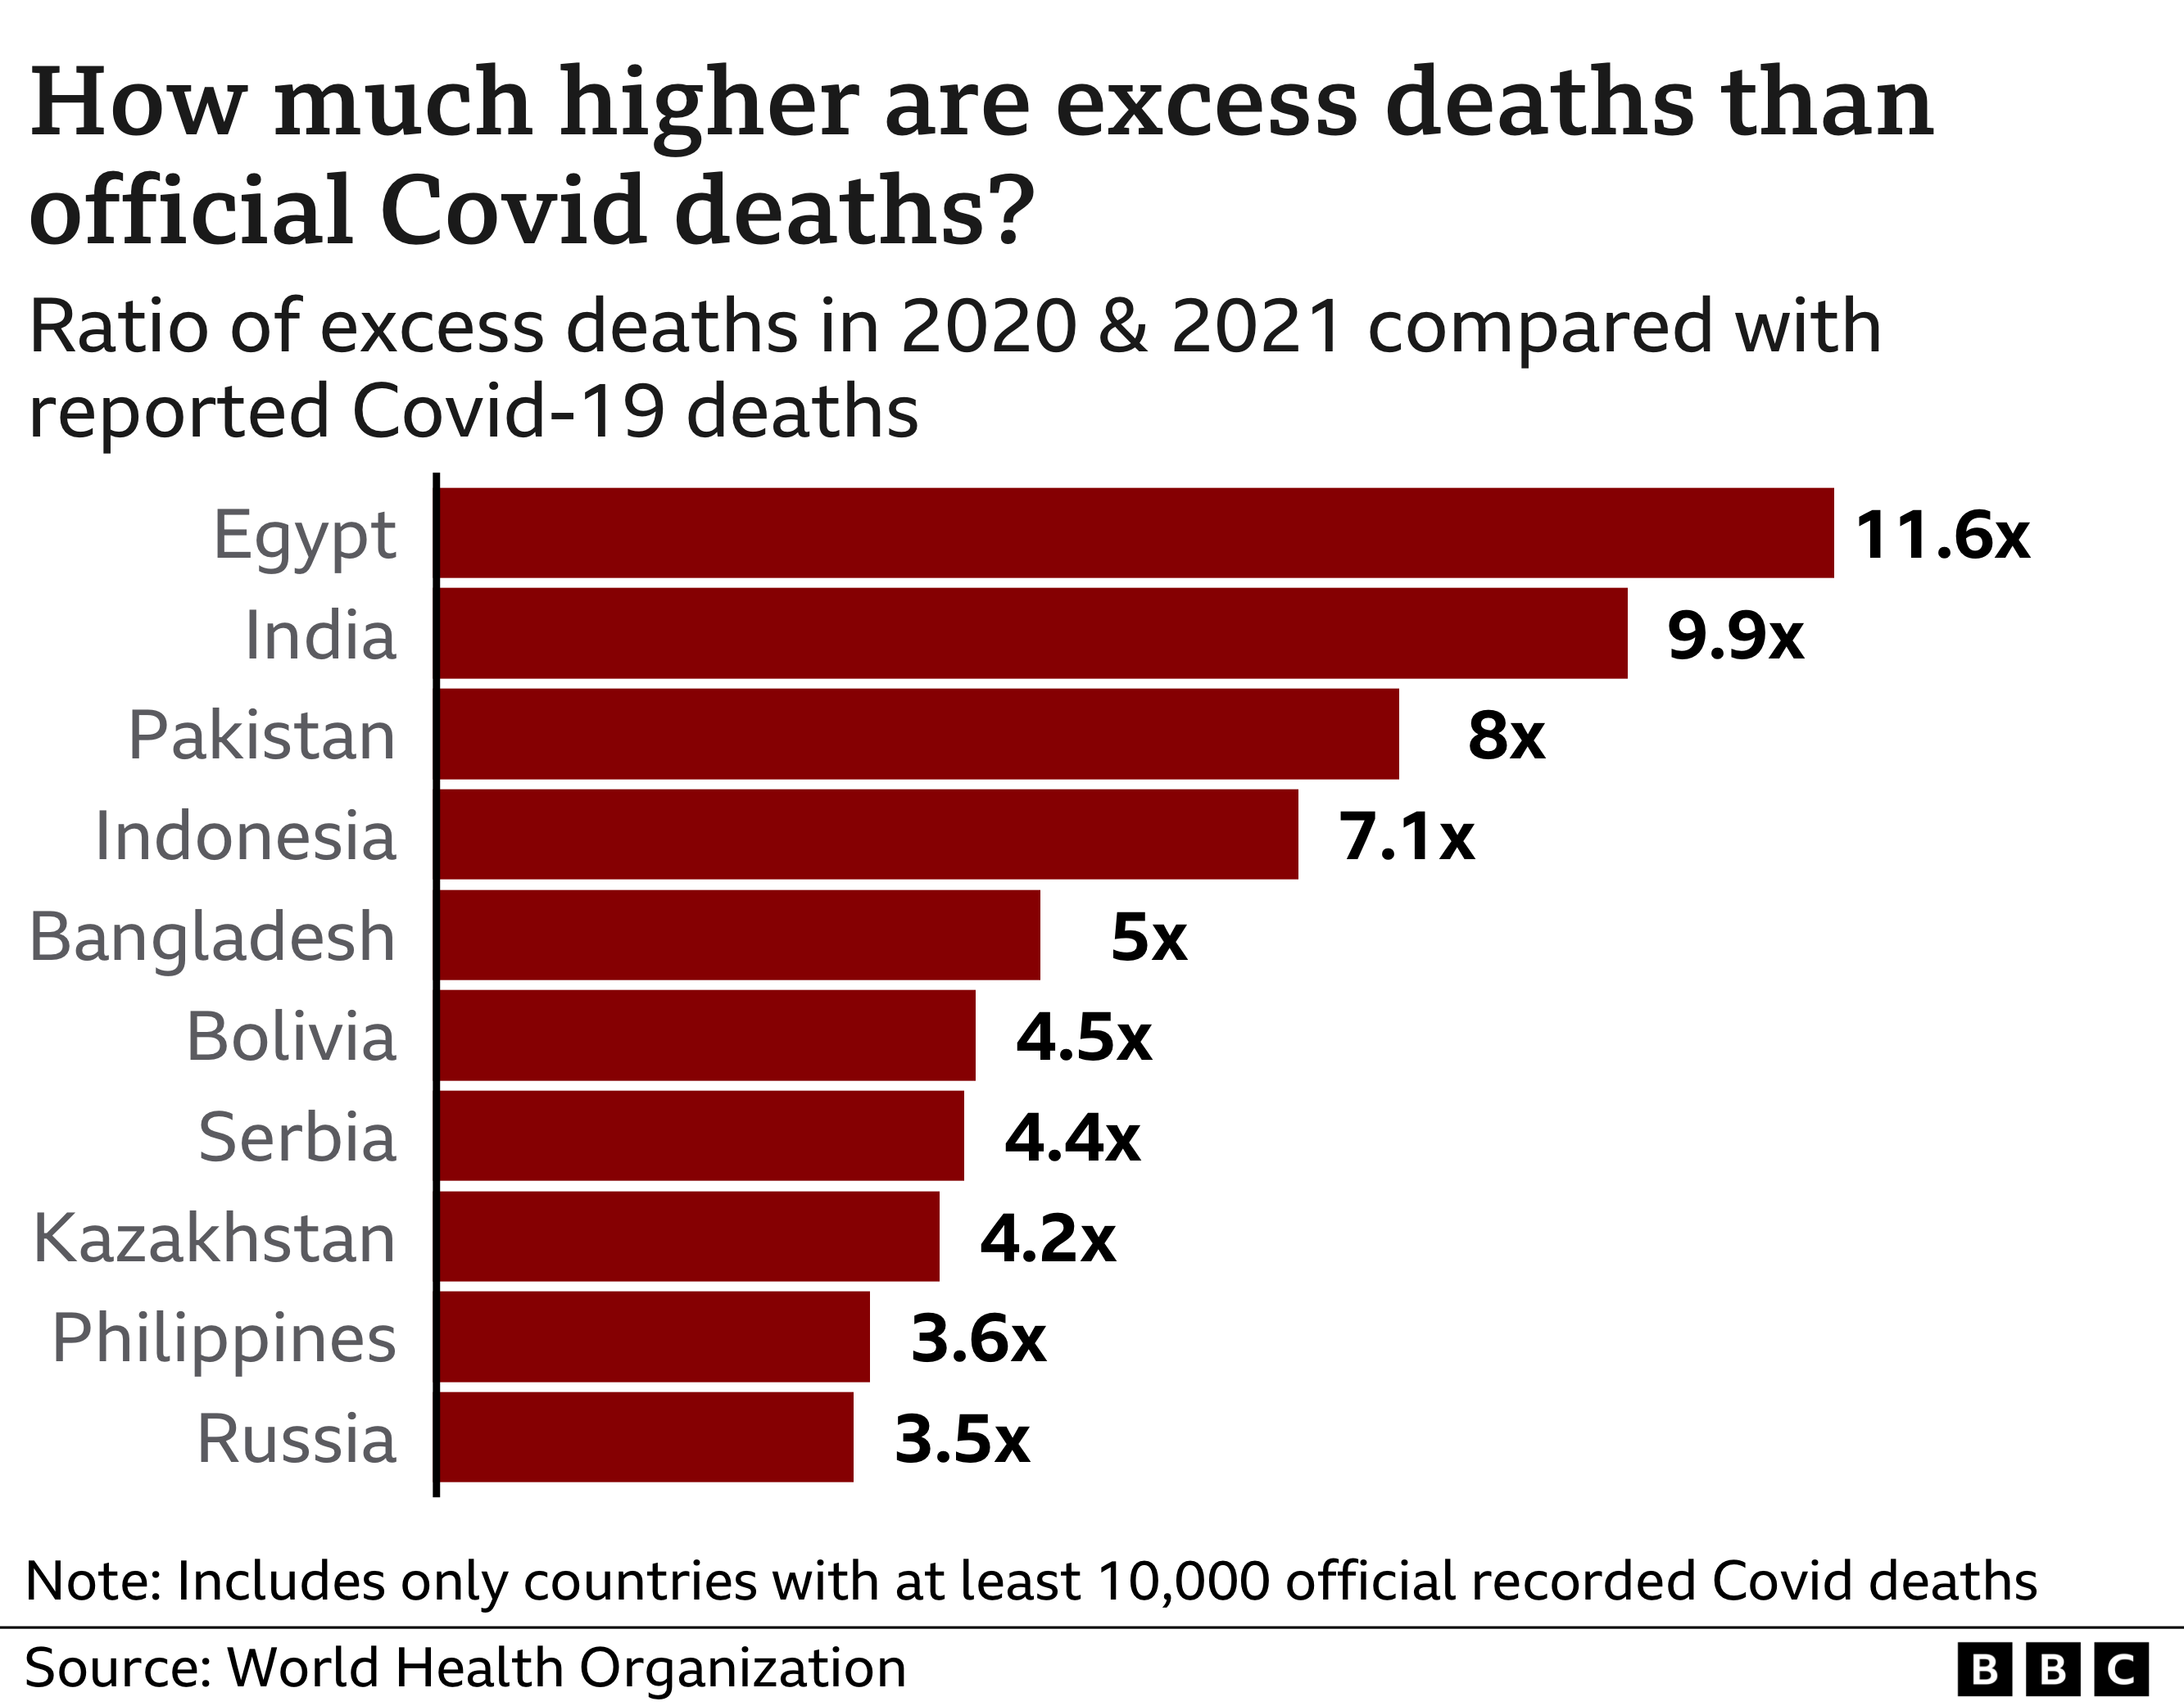 Диаграмма, показывающая, насколько избыточная смертность выше, чем официально зарегистрированная смертность от Covid, с Египтом наверху с 11,6 выше, Индия на втором месте с 9,9 раз выше, а Пакистан на третьем месте с избыточным числом смертей в восемь раз выше